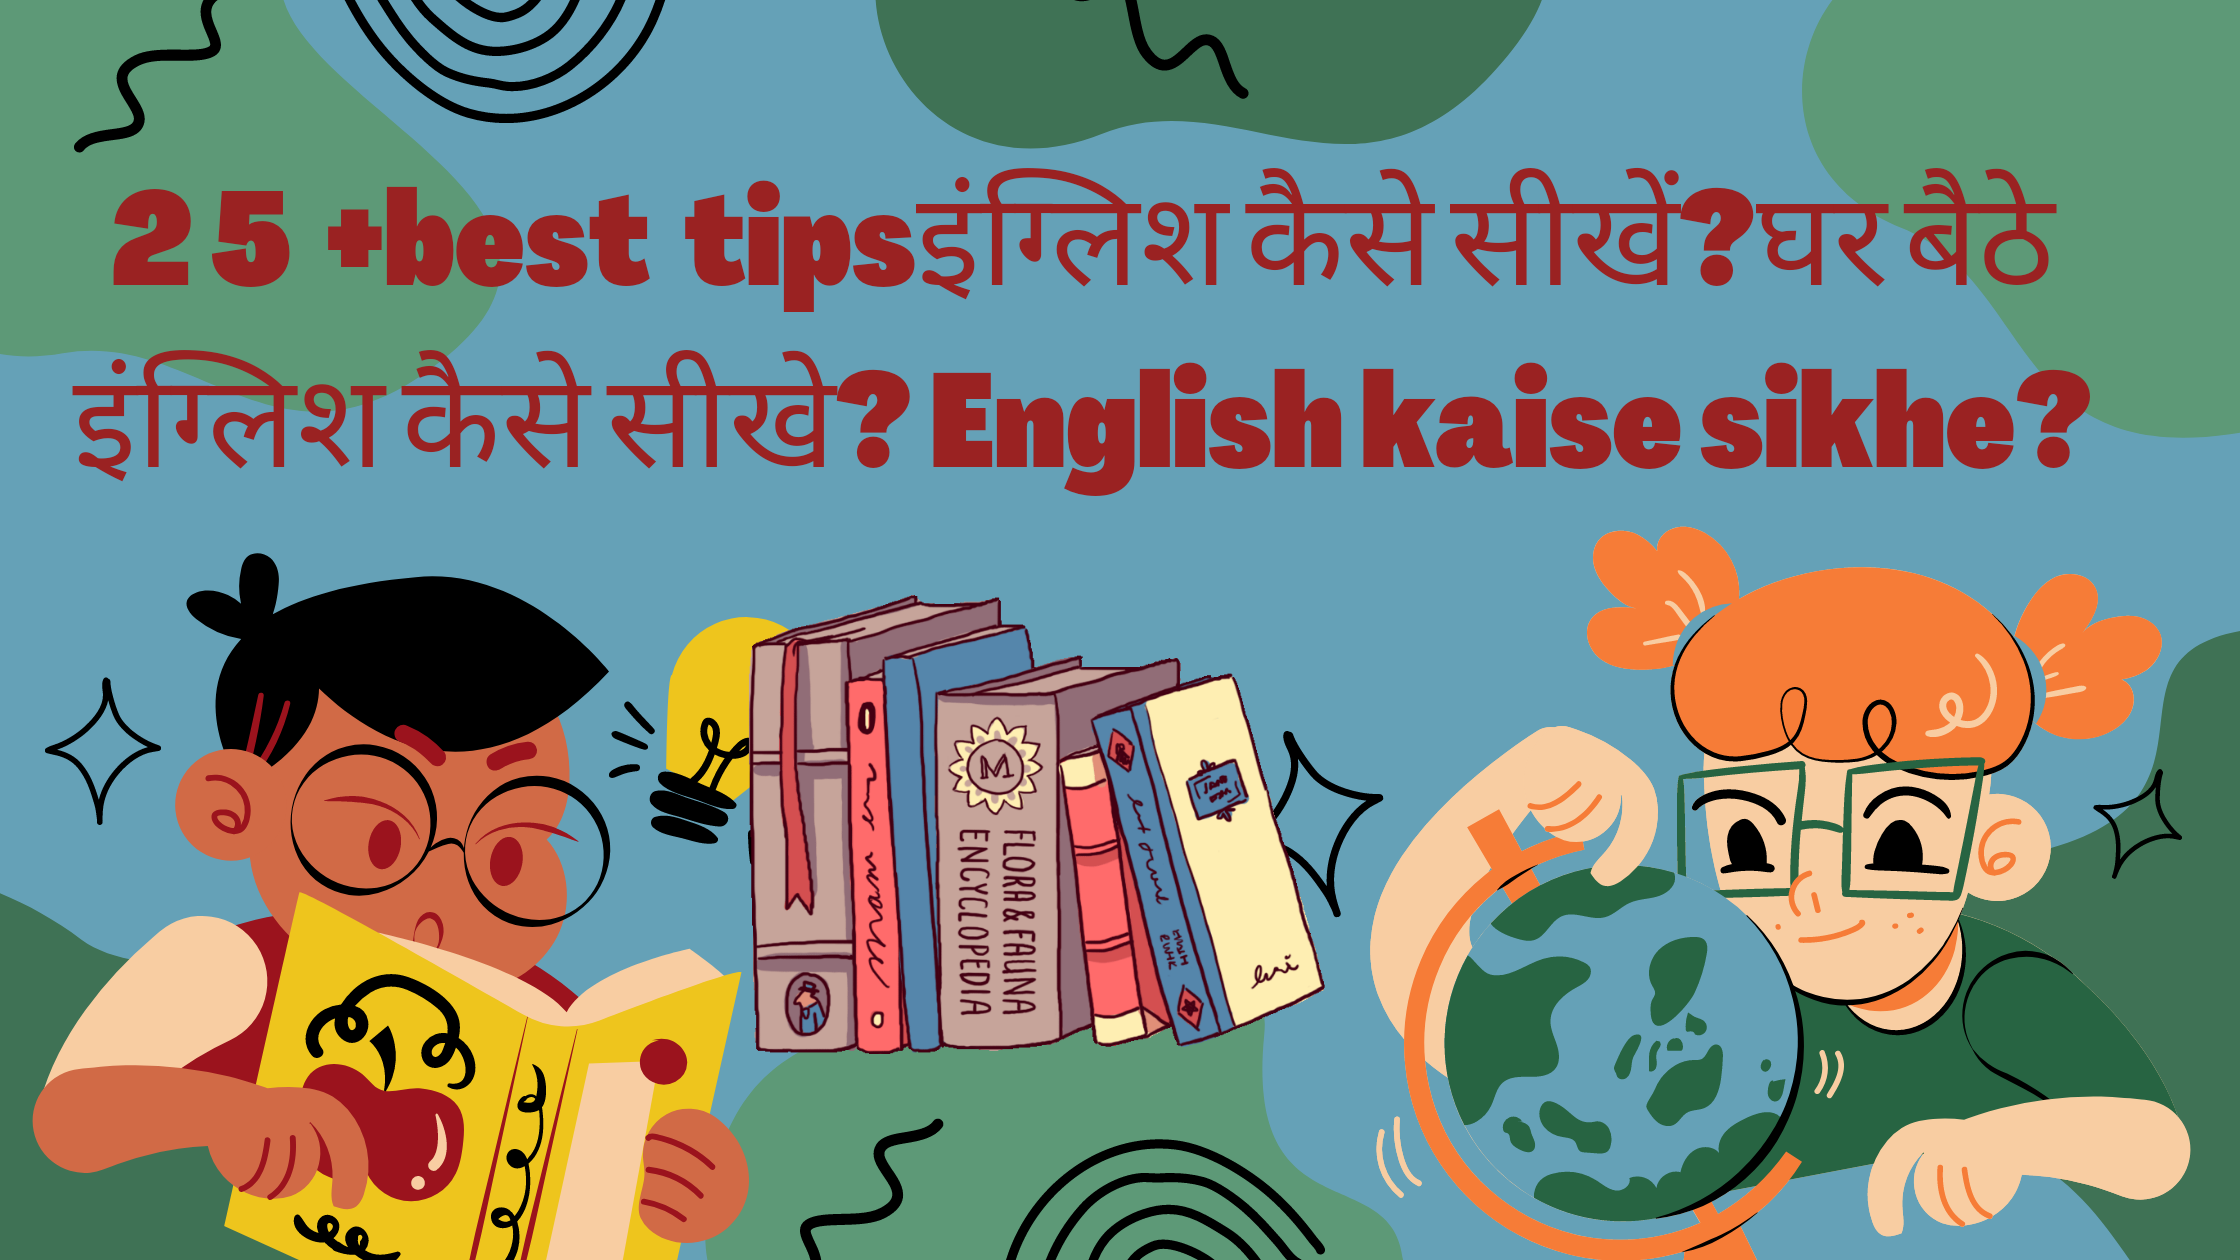 25+best tipsइंग्लिश कैसे सीखें?घर बैठे इंग्लिश कैसे सीखे? English kaise sikhe?